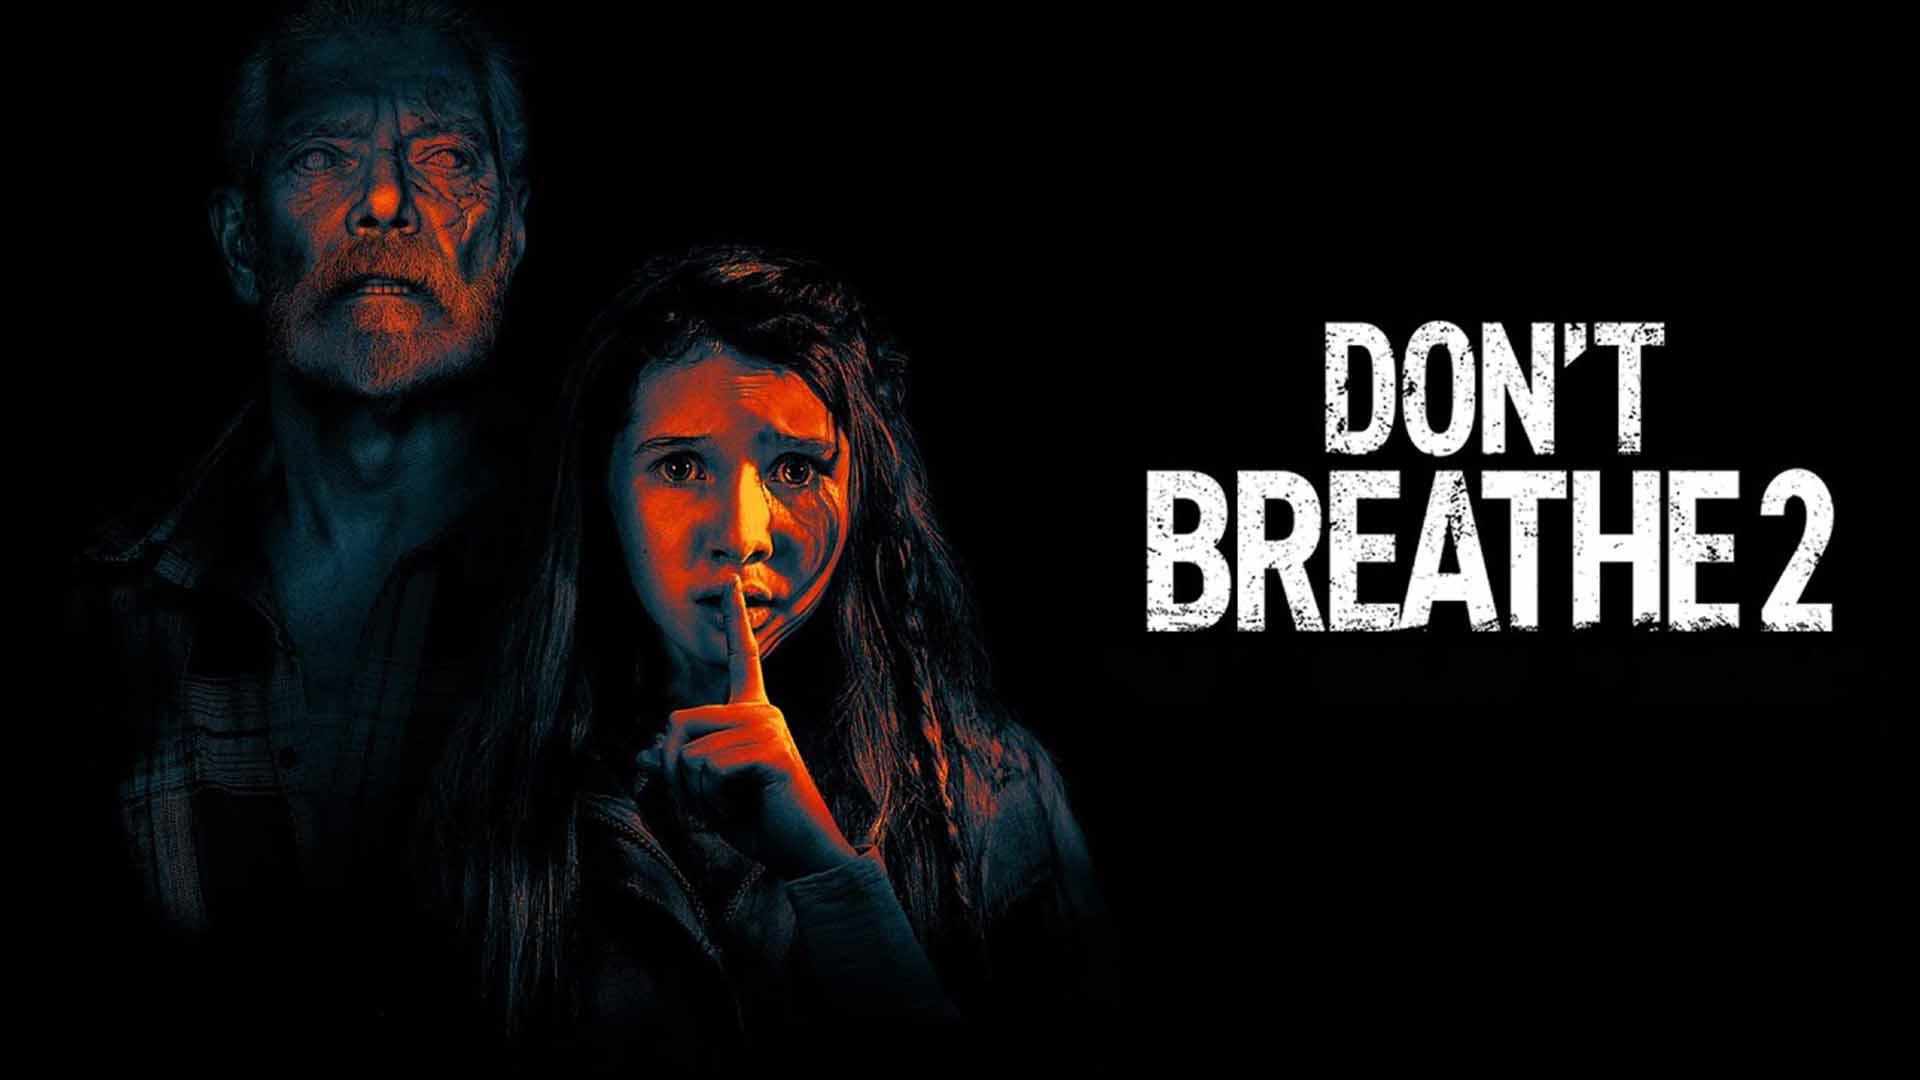 واکنش منتقدان به فیلم Don’t Breathe 2 - نفس نکش ۲